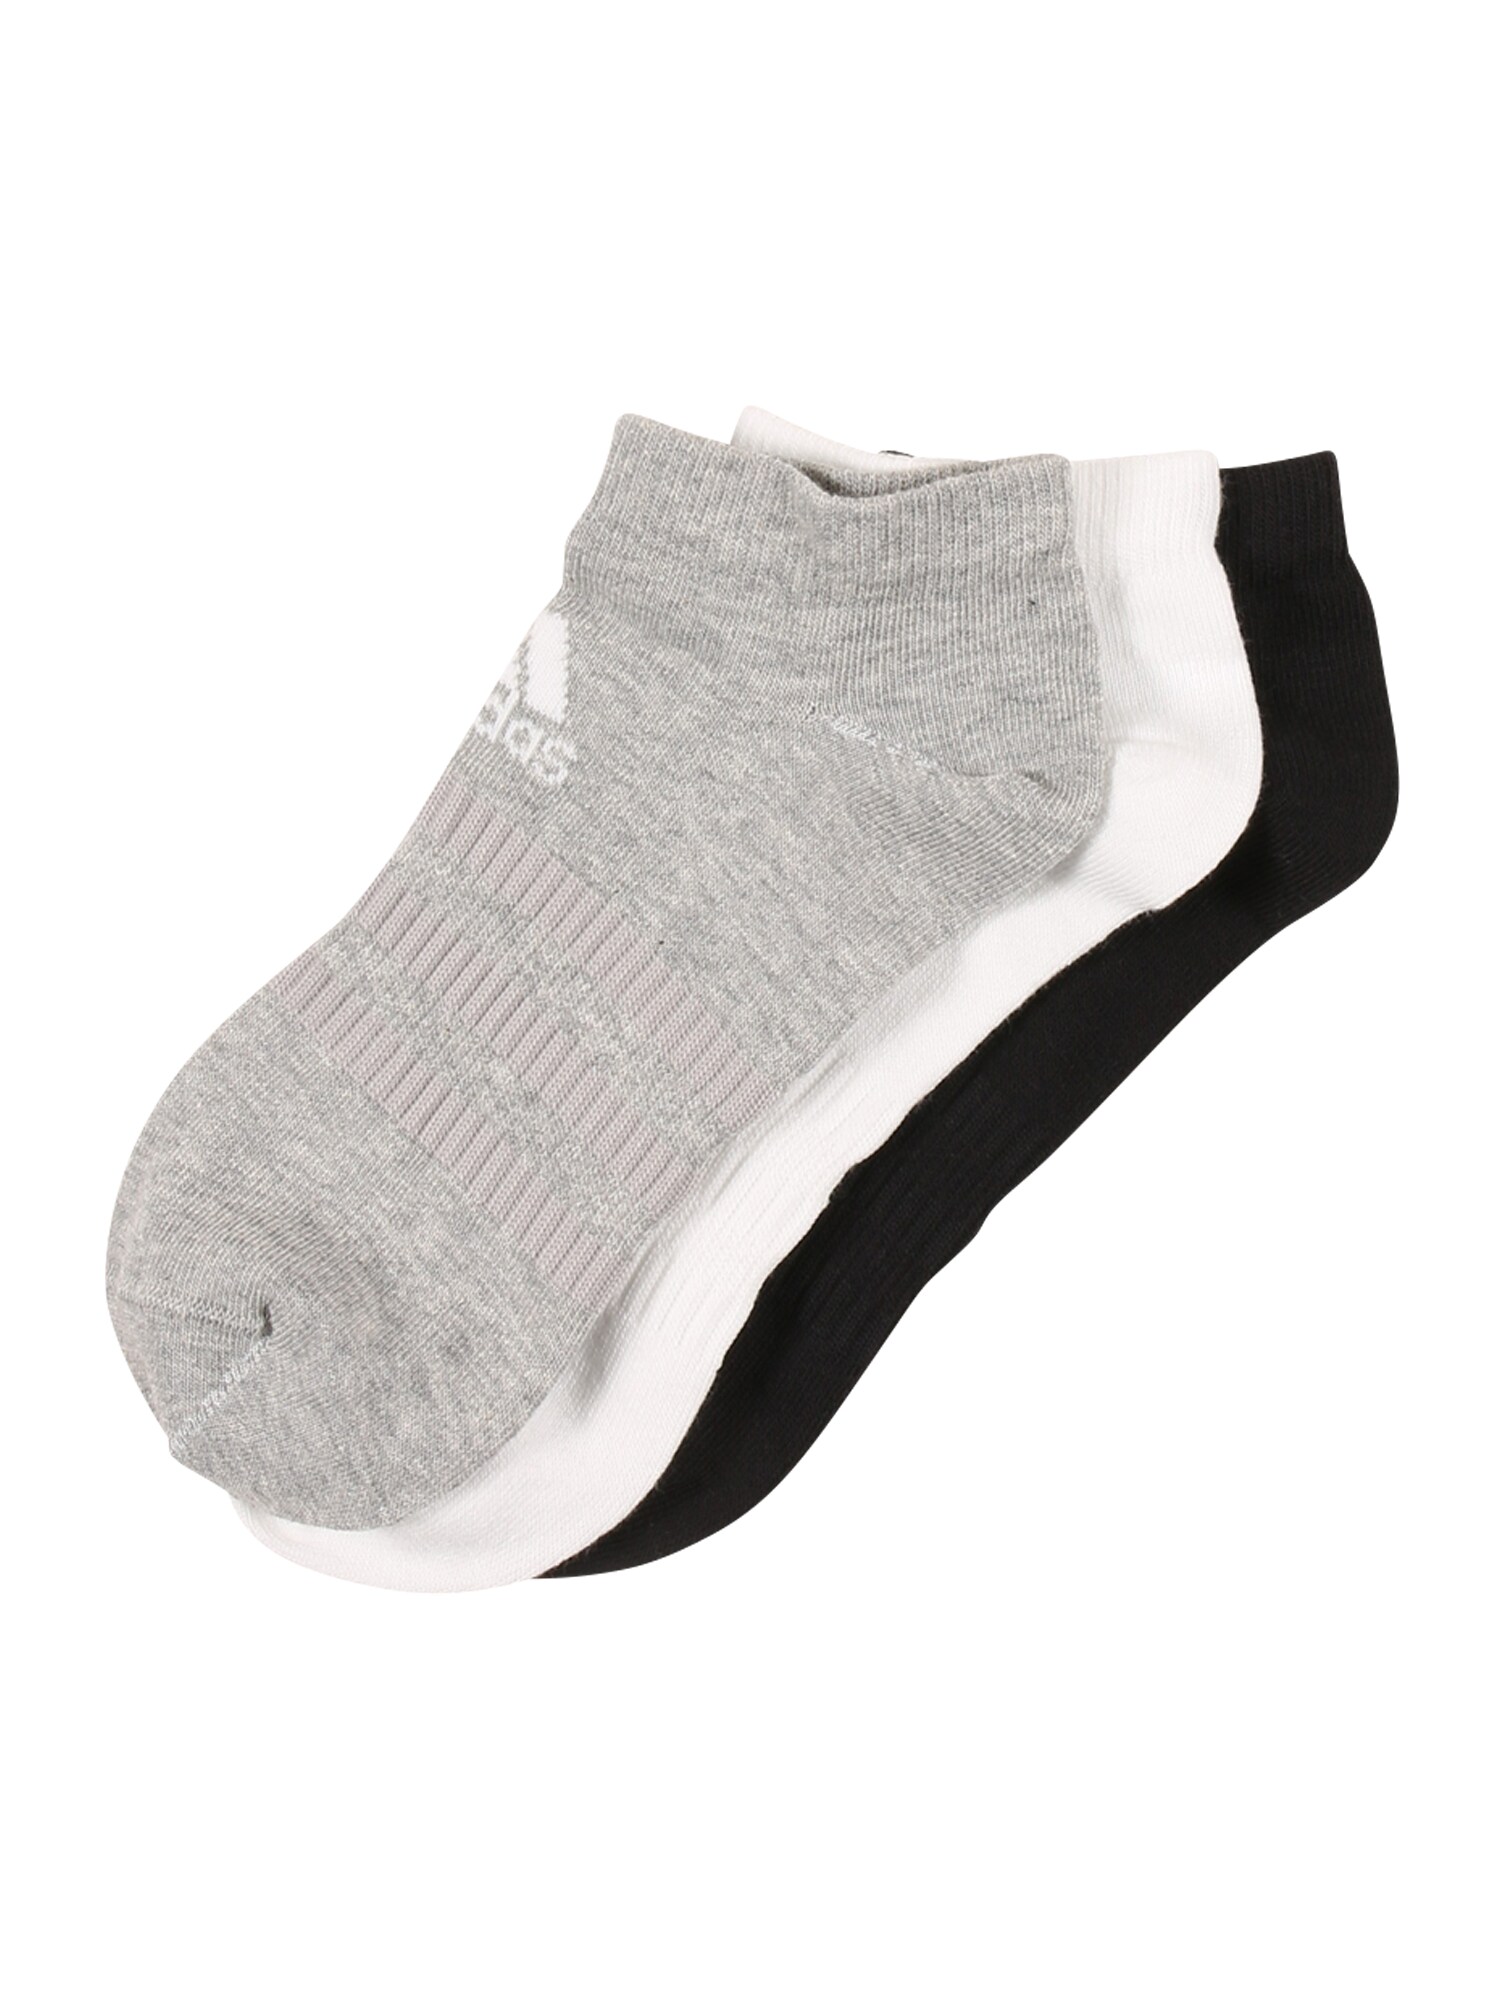 ADIDAS PERFORMANCE Sportinės kojinės  juoda / balta / mišrios spalvos / margai pilka